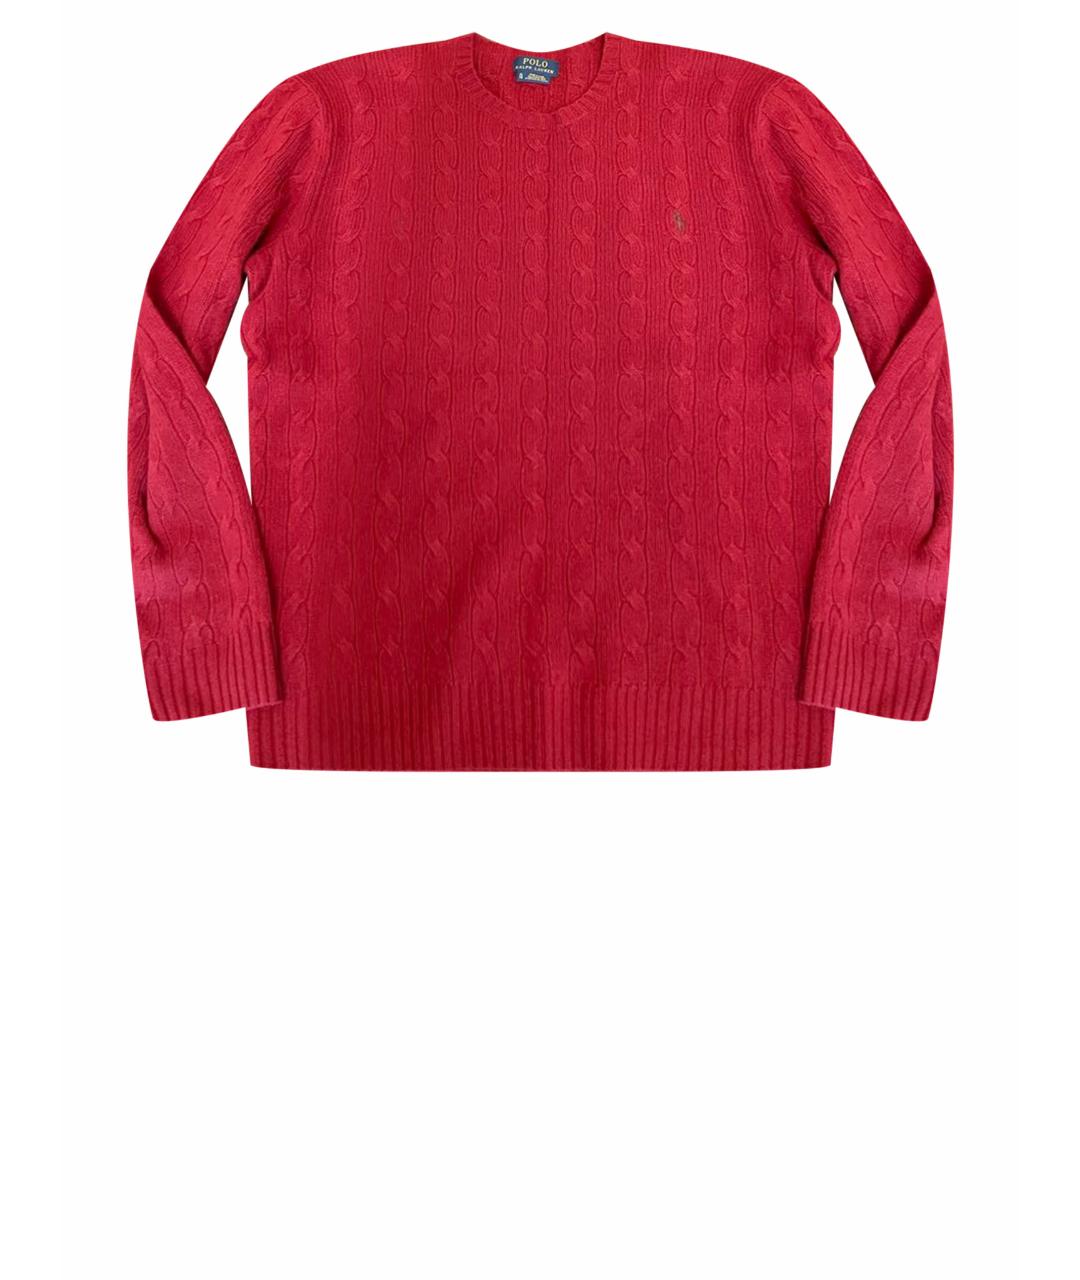 POLO RALPH LAUREN Бордовый шерстяной джемпер / свитер, фото 1